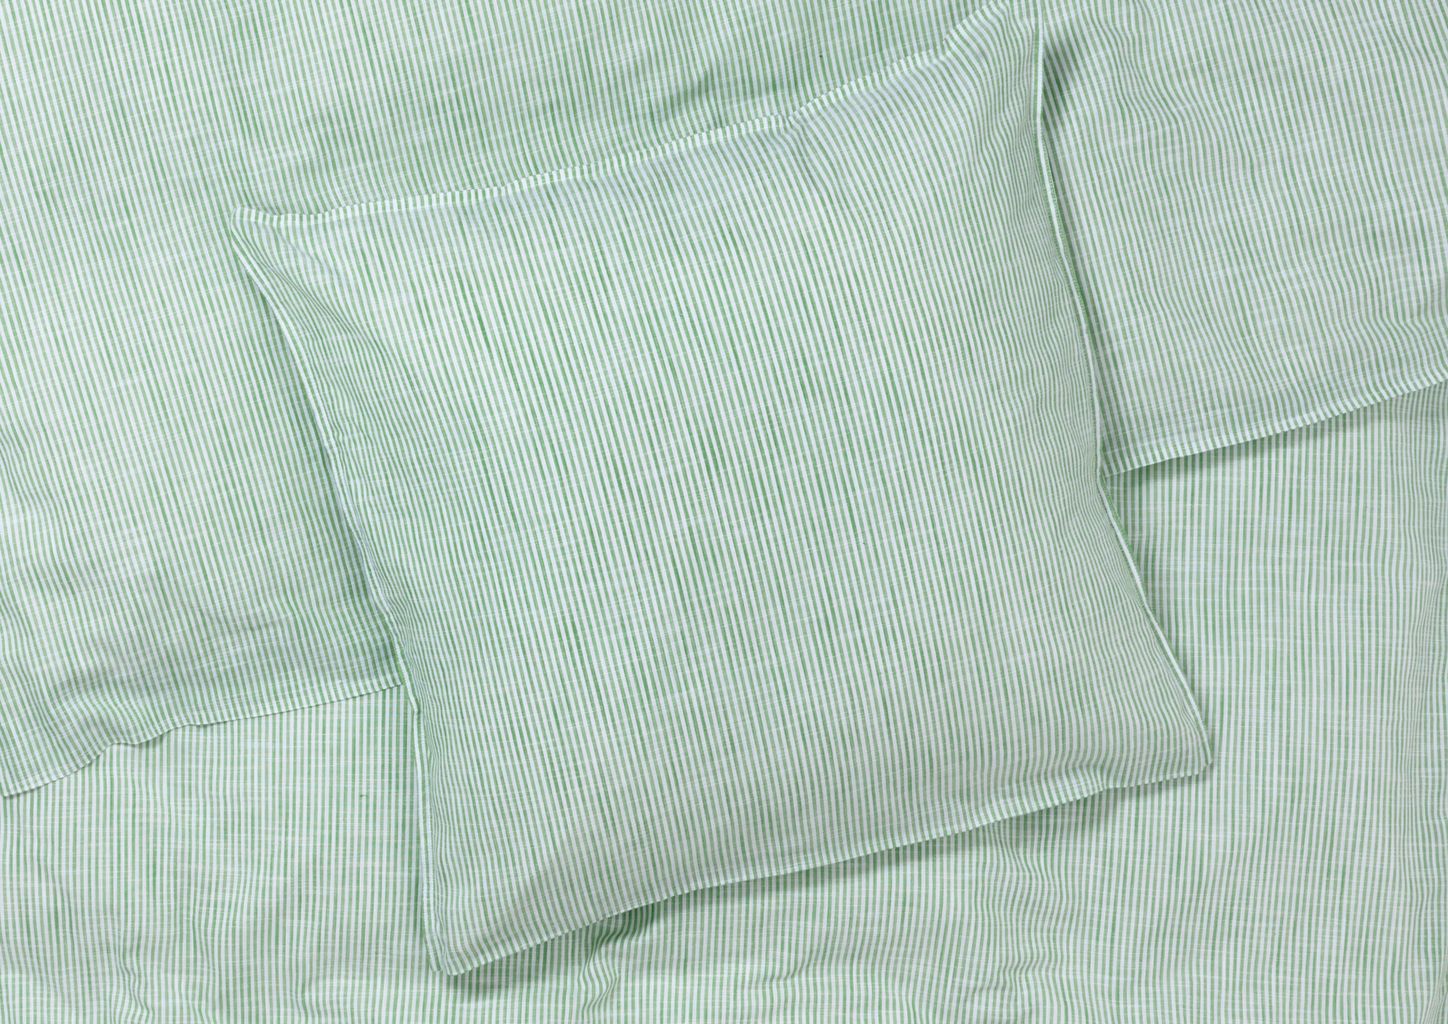 Juna Monochrome Lines Bettwäsche 140 x200 cm, grün/weiß